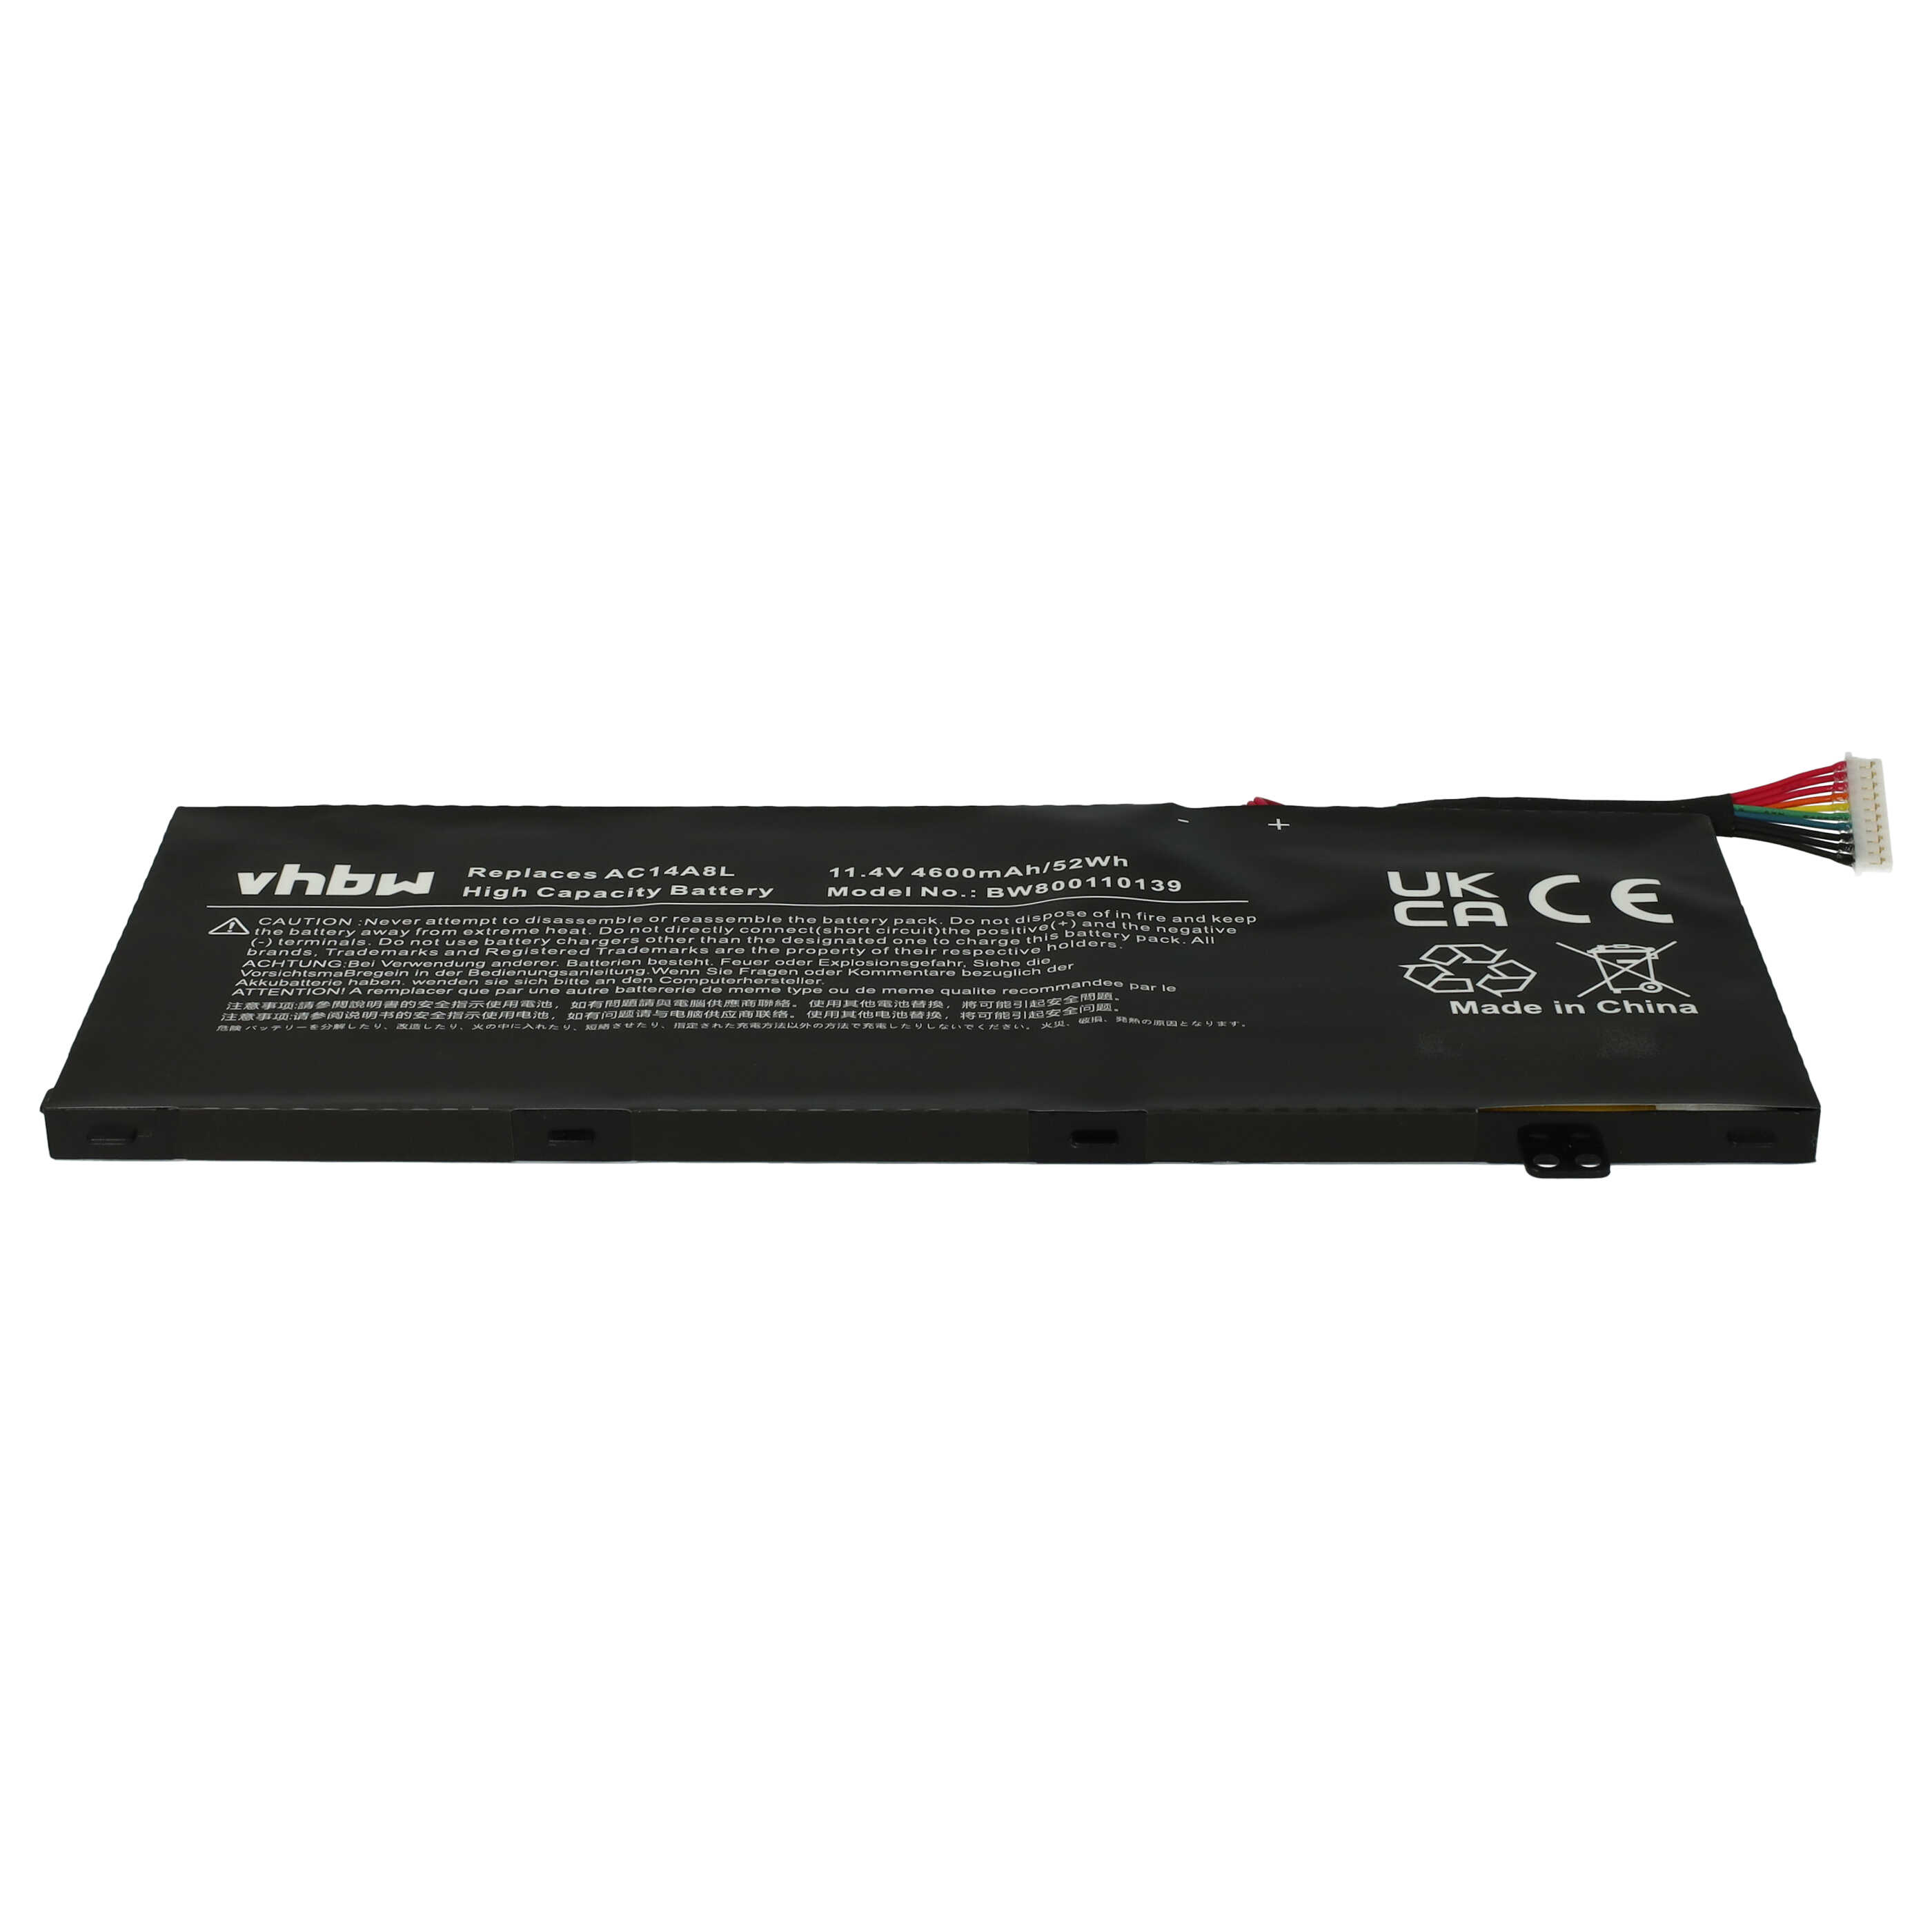 Batterie remplace Acer 3ICP7/61/80, AC14A8L pour ordinateur portable - 4600mAh 11,4V Li-polymère, noir